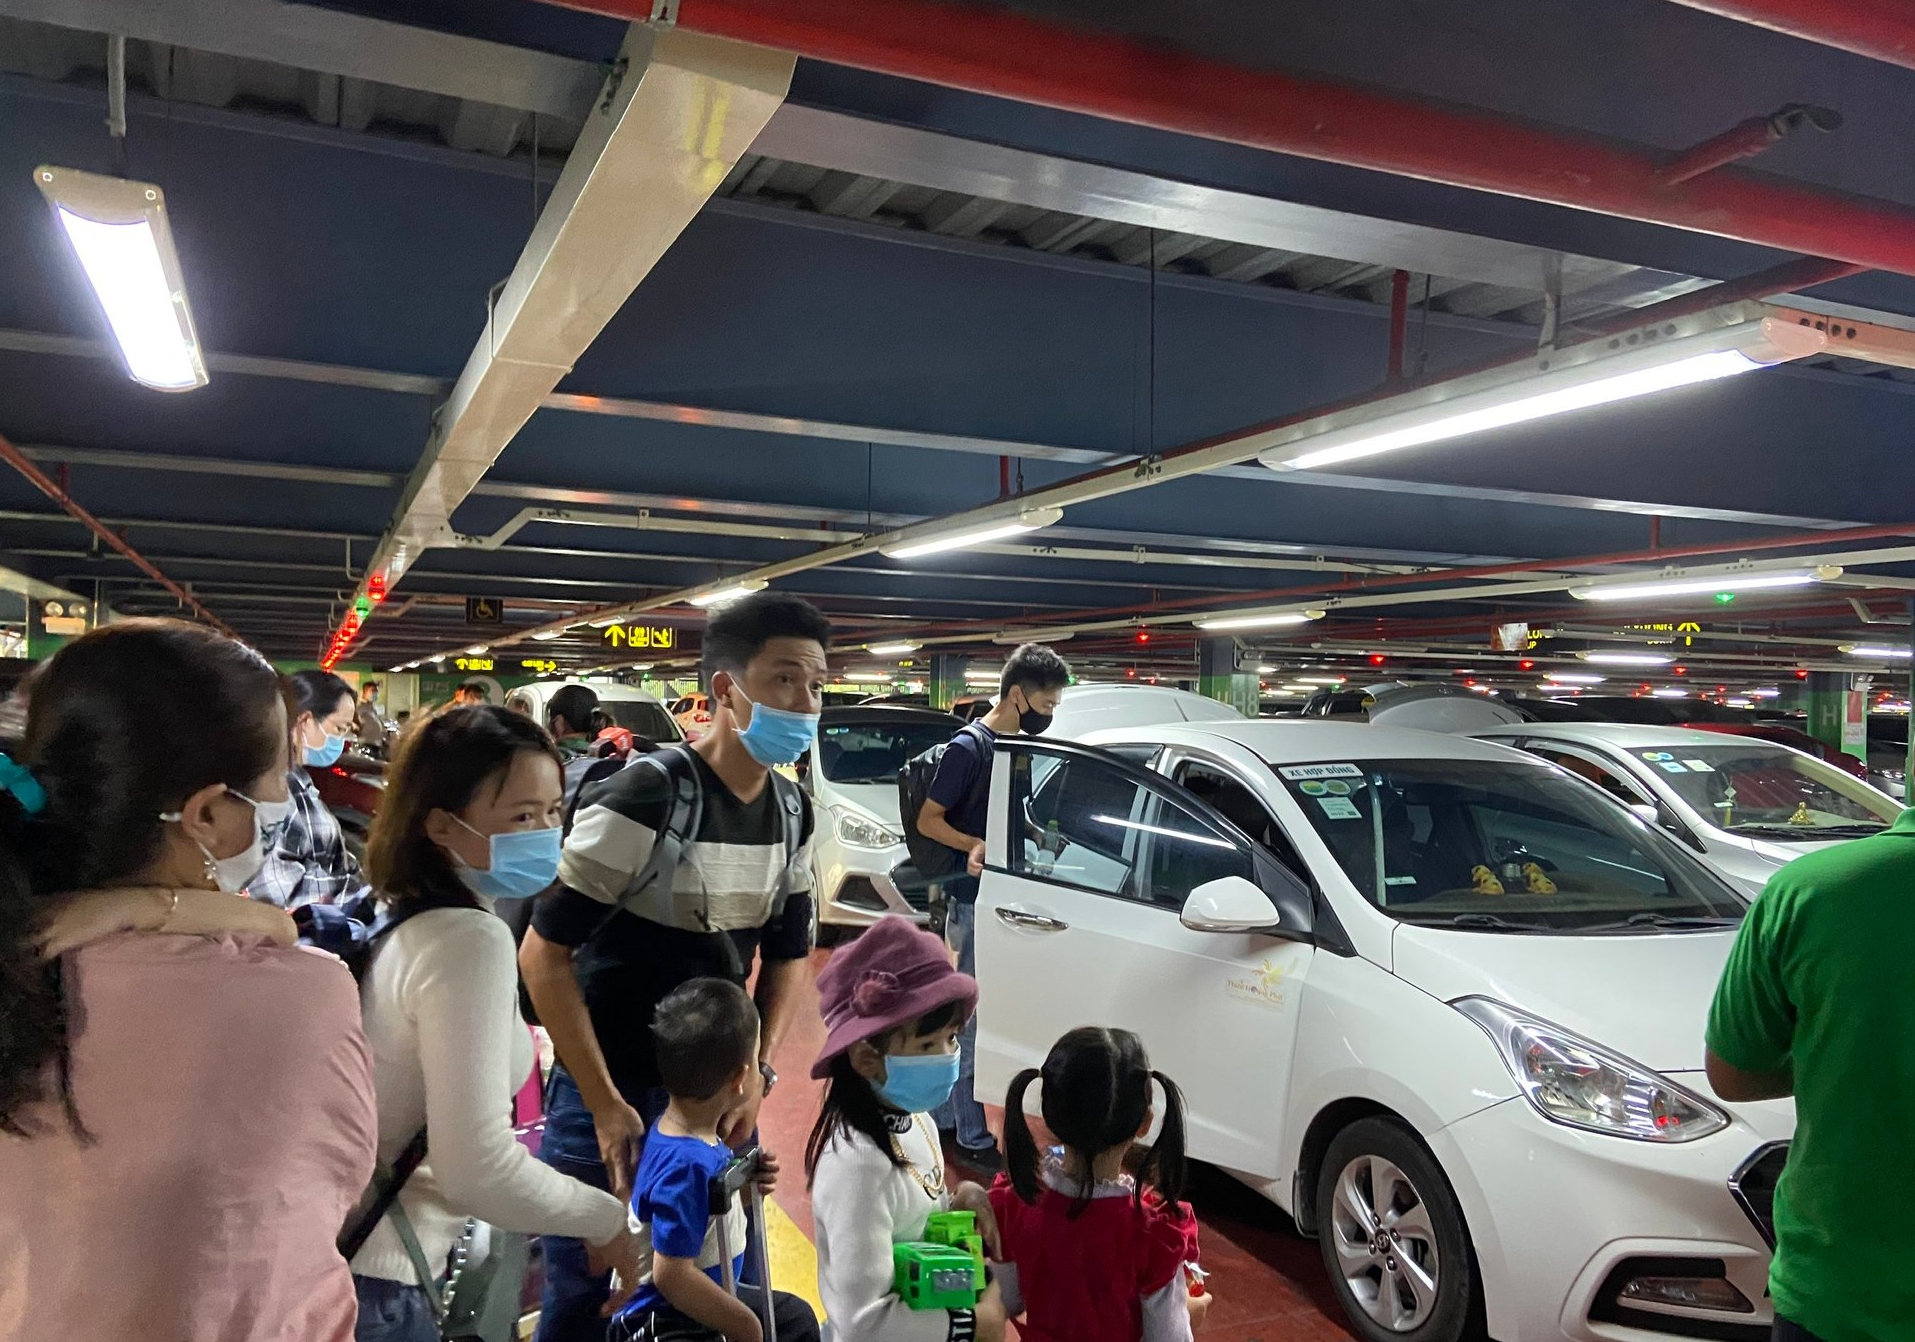 Giá taxi tăng gấp đôi, khách ở sân bay Tân Sơn Nhất vẫn khó bắt xe